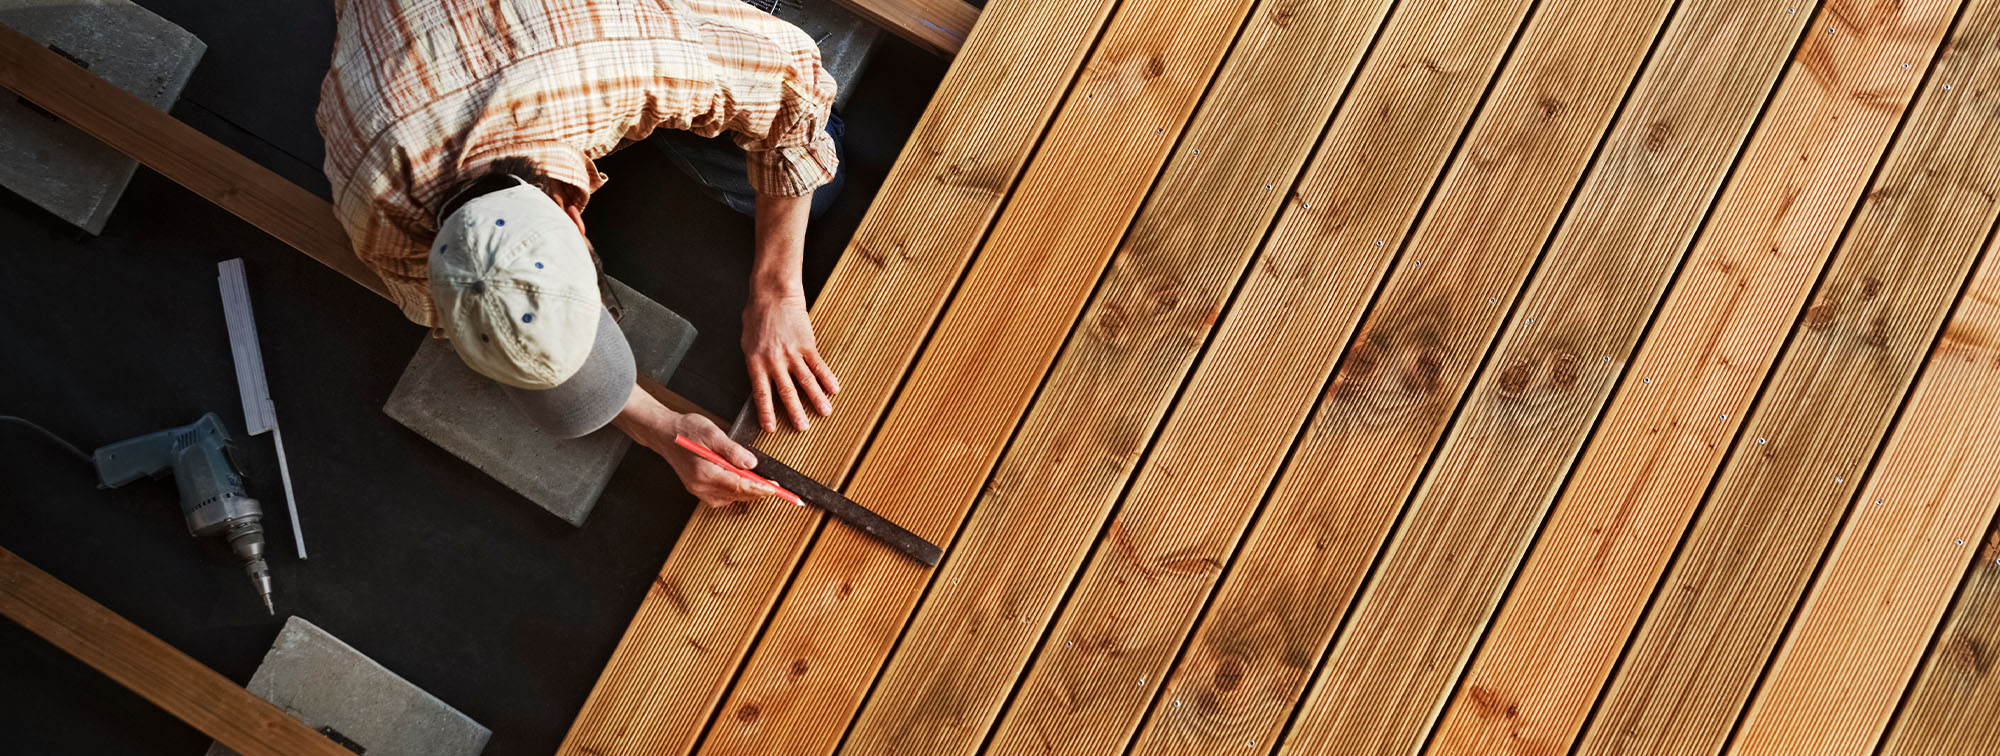 Man building an outdoor wooden deck